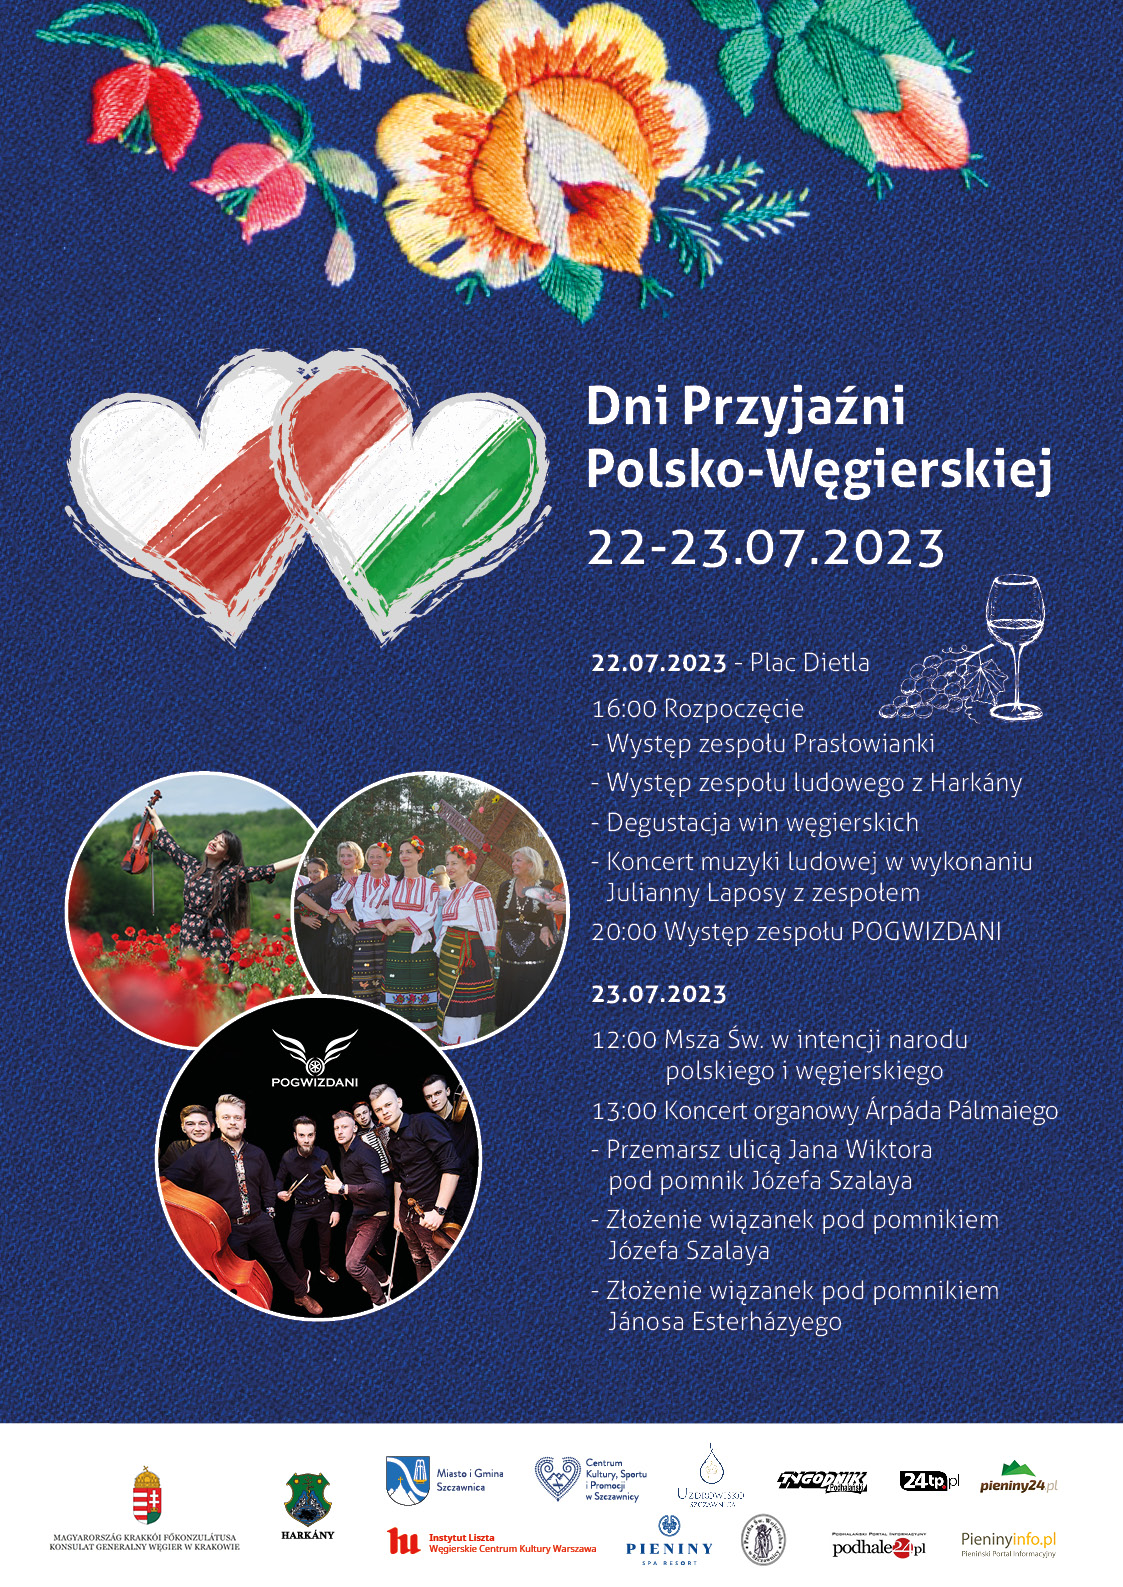 22-23.07.2023 - Dni Przyjaźni Polsko-Węgierskiej